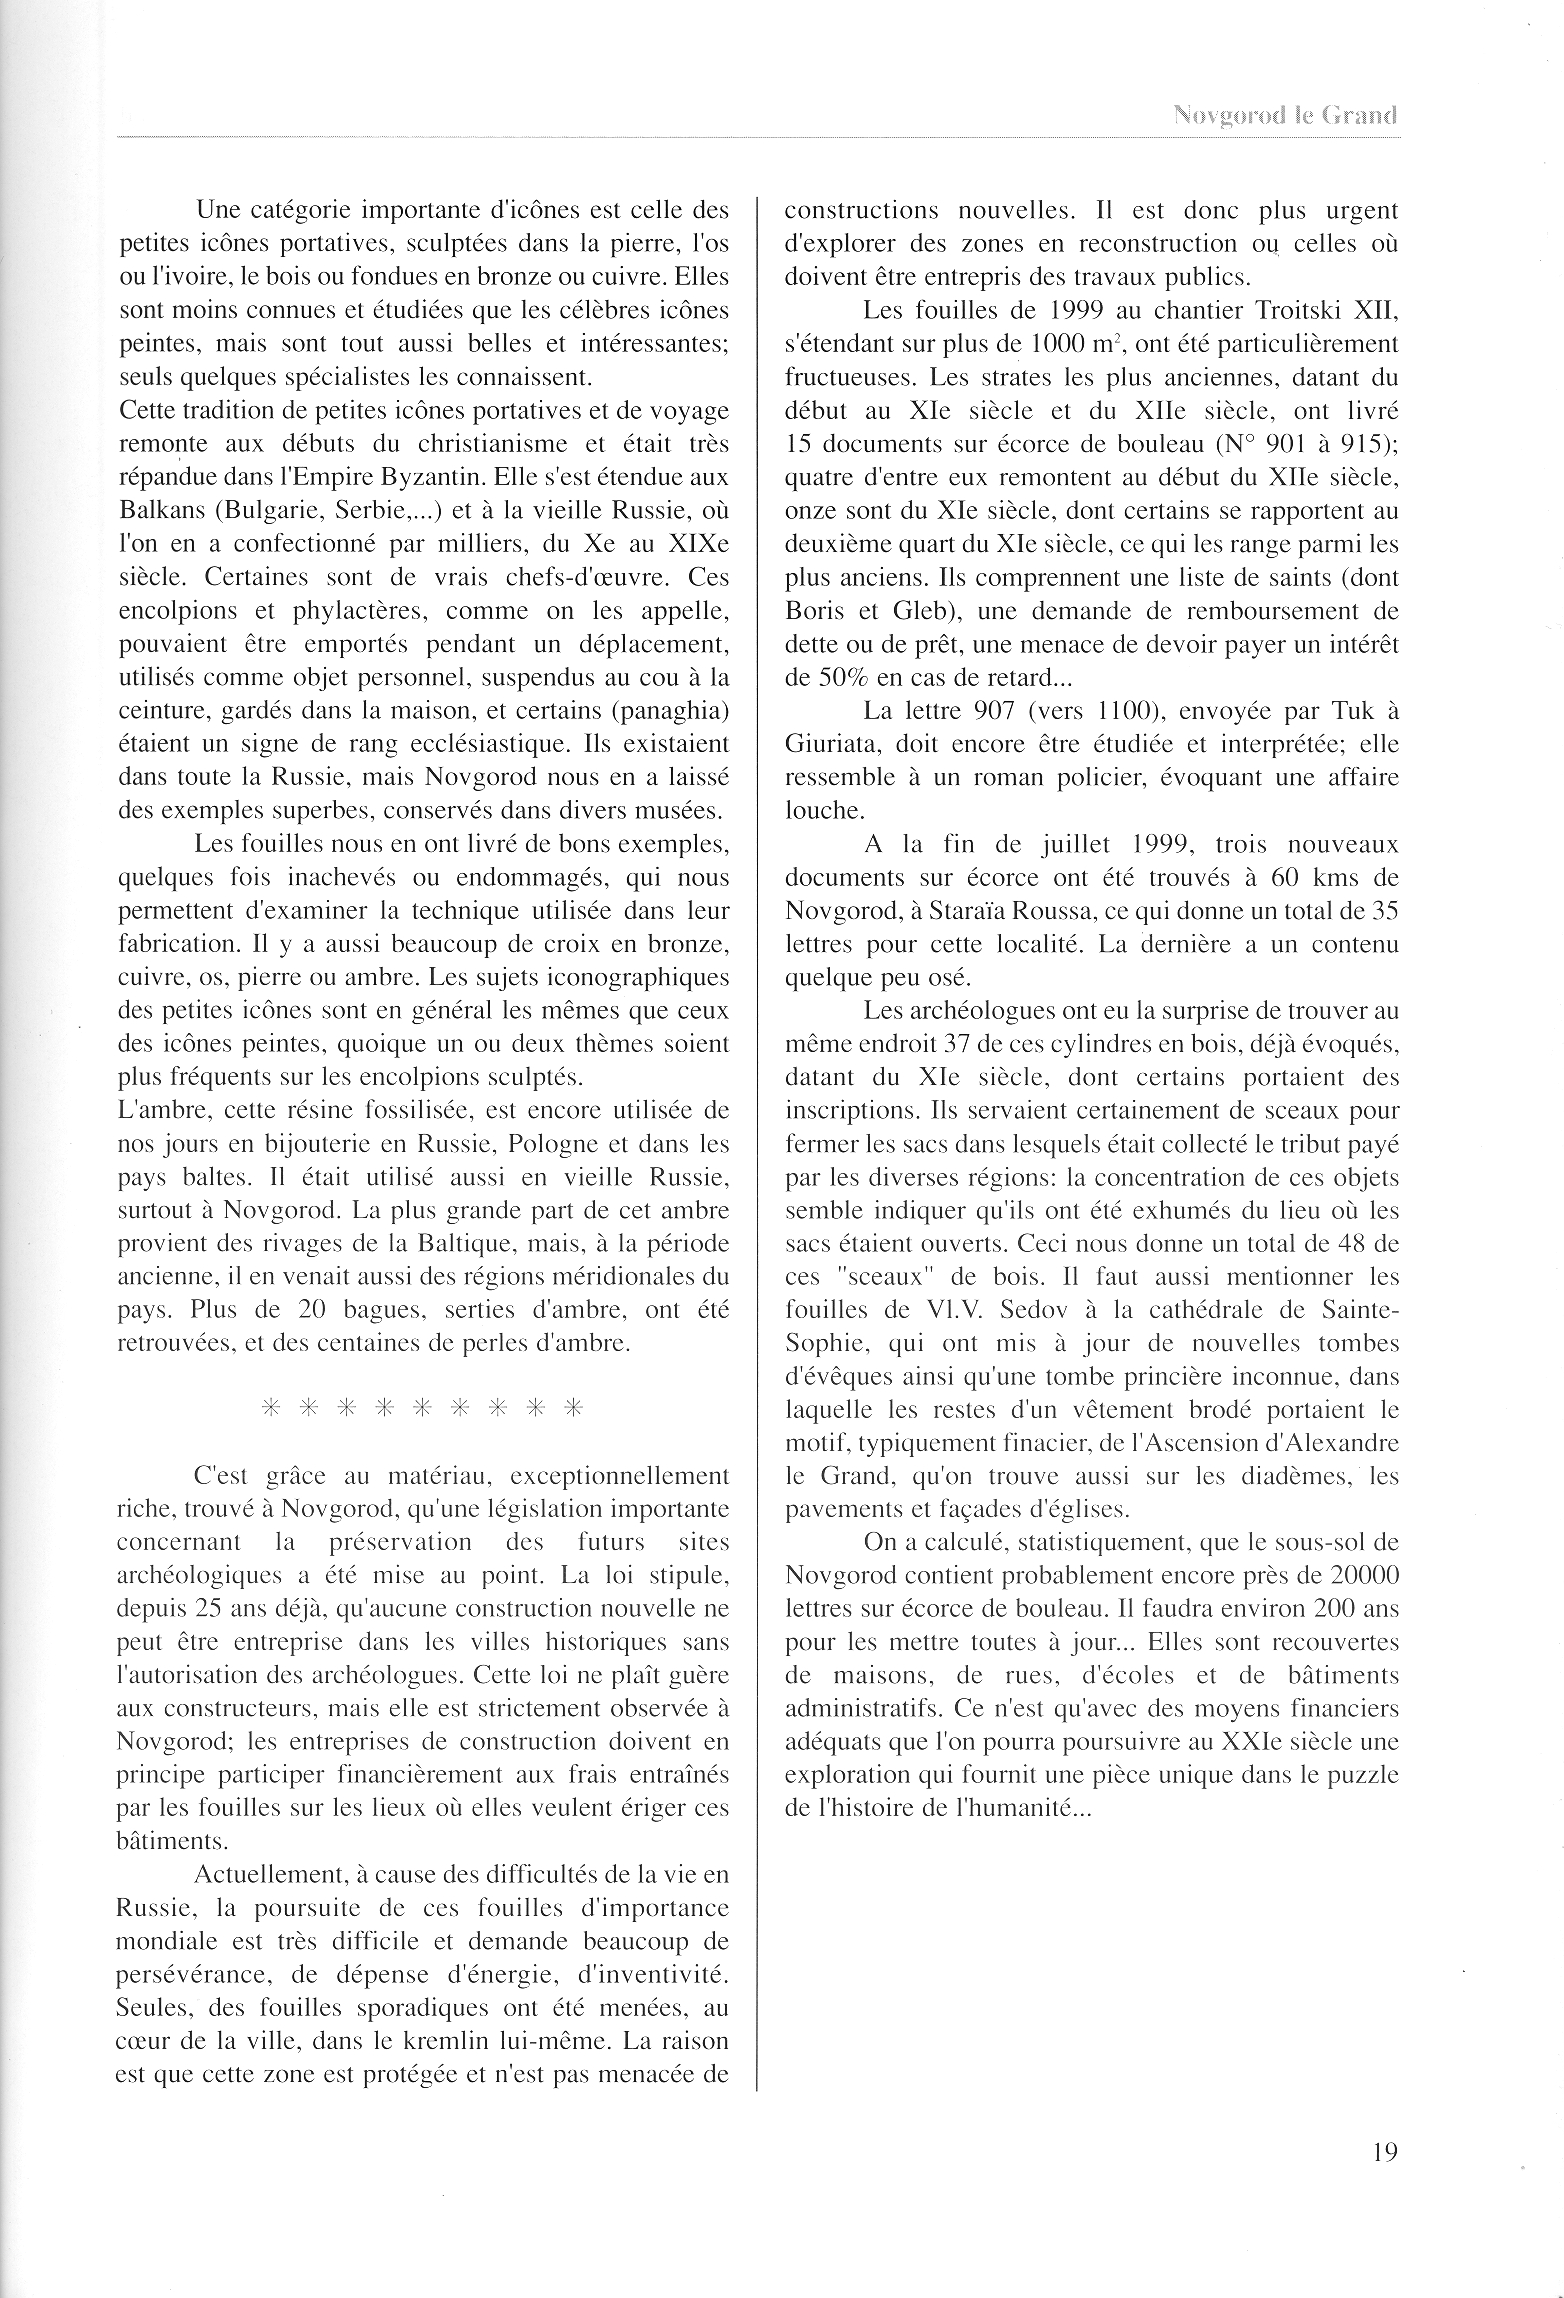 FPPR Revue 01 2002 21. Page 19. Novgorod le Grand. Anatomie d|une métropole médiévale russe par Jean Blankoff